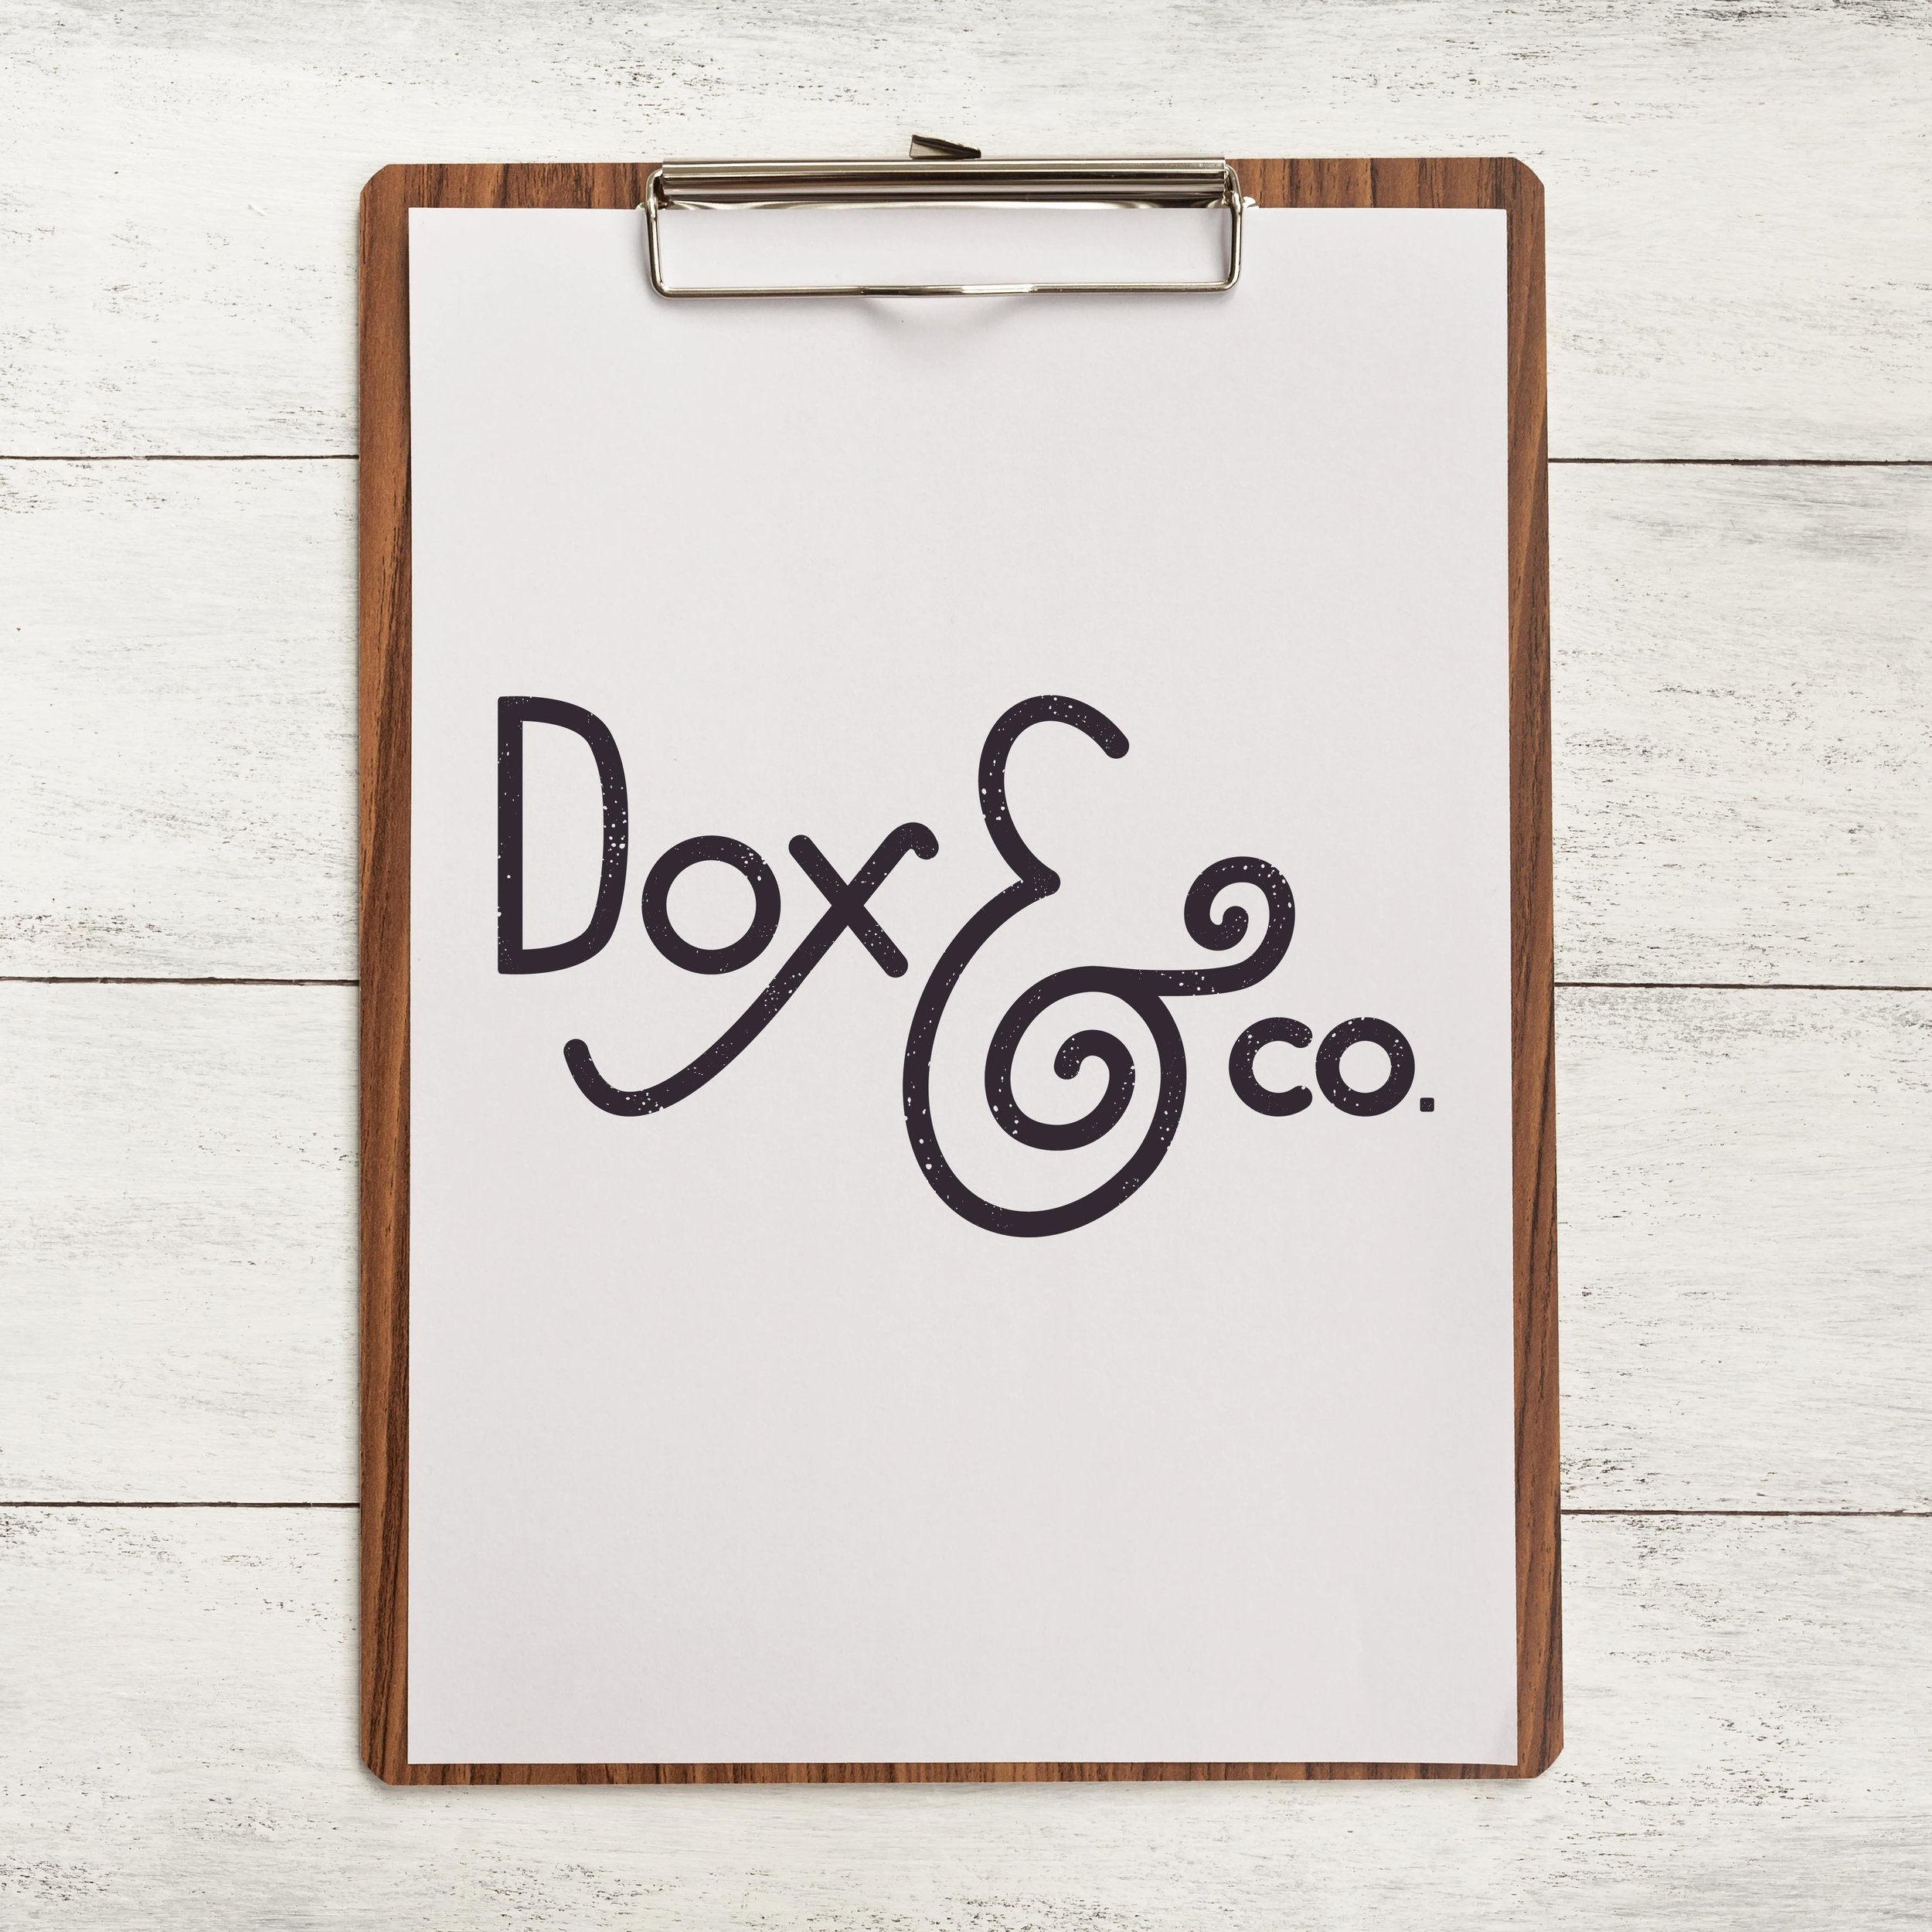 Dox&co.jpg